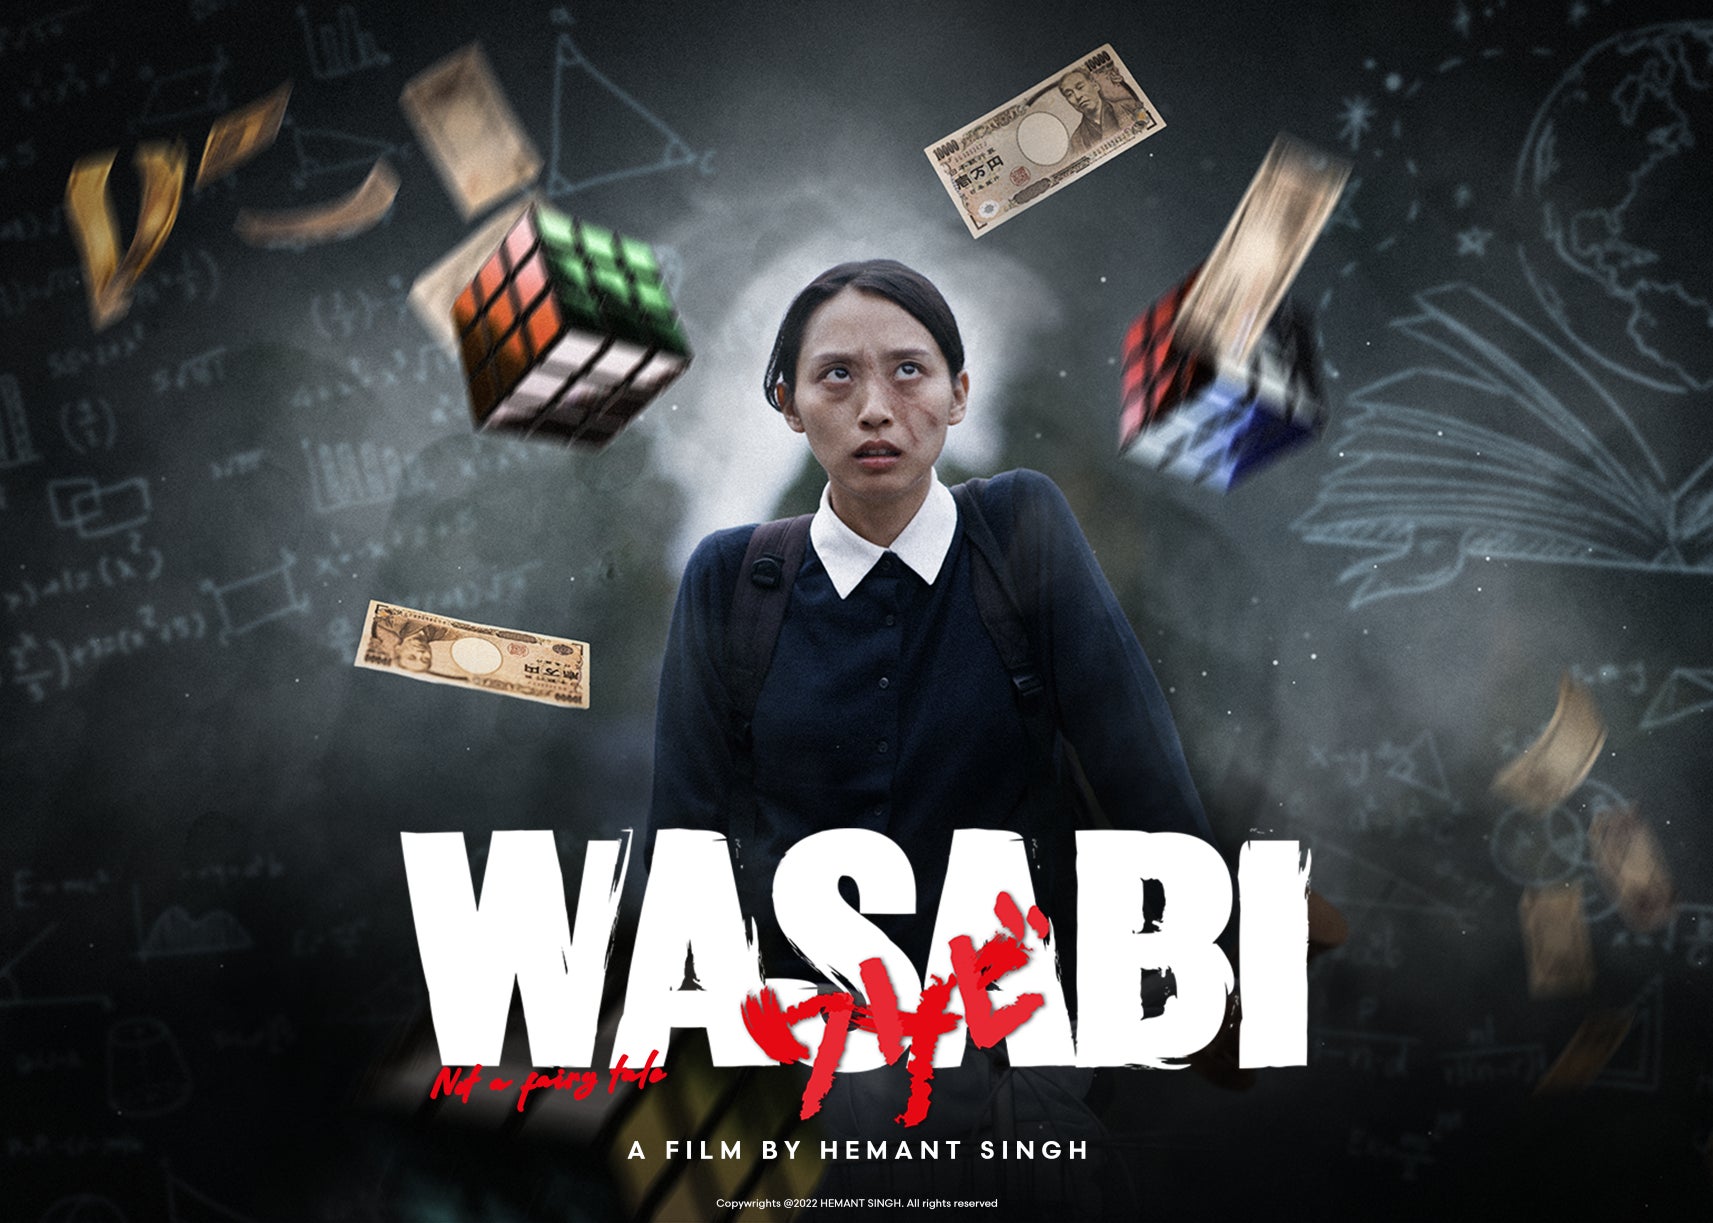 顔に傷を持つ女の子が引き起こすカオスな世界を描く。インド人映画監督が、日本映画で世界を目指す、映画「WASABI not a fairly tale」完成のためのクラウドファンディング開始